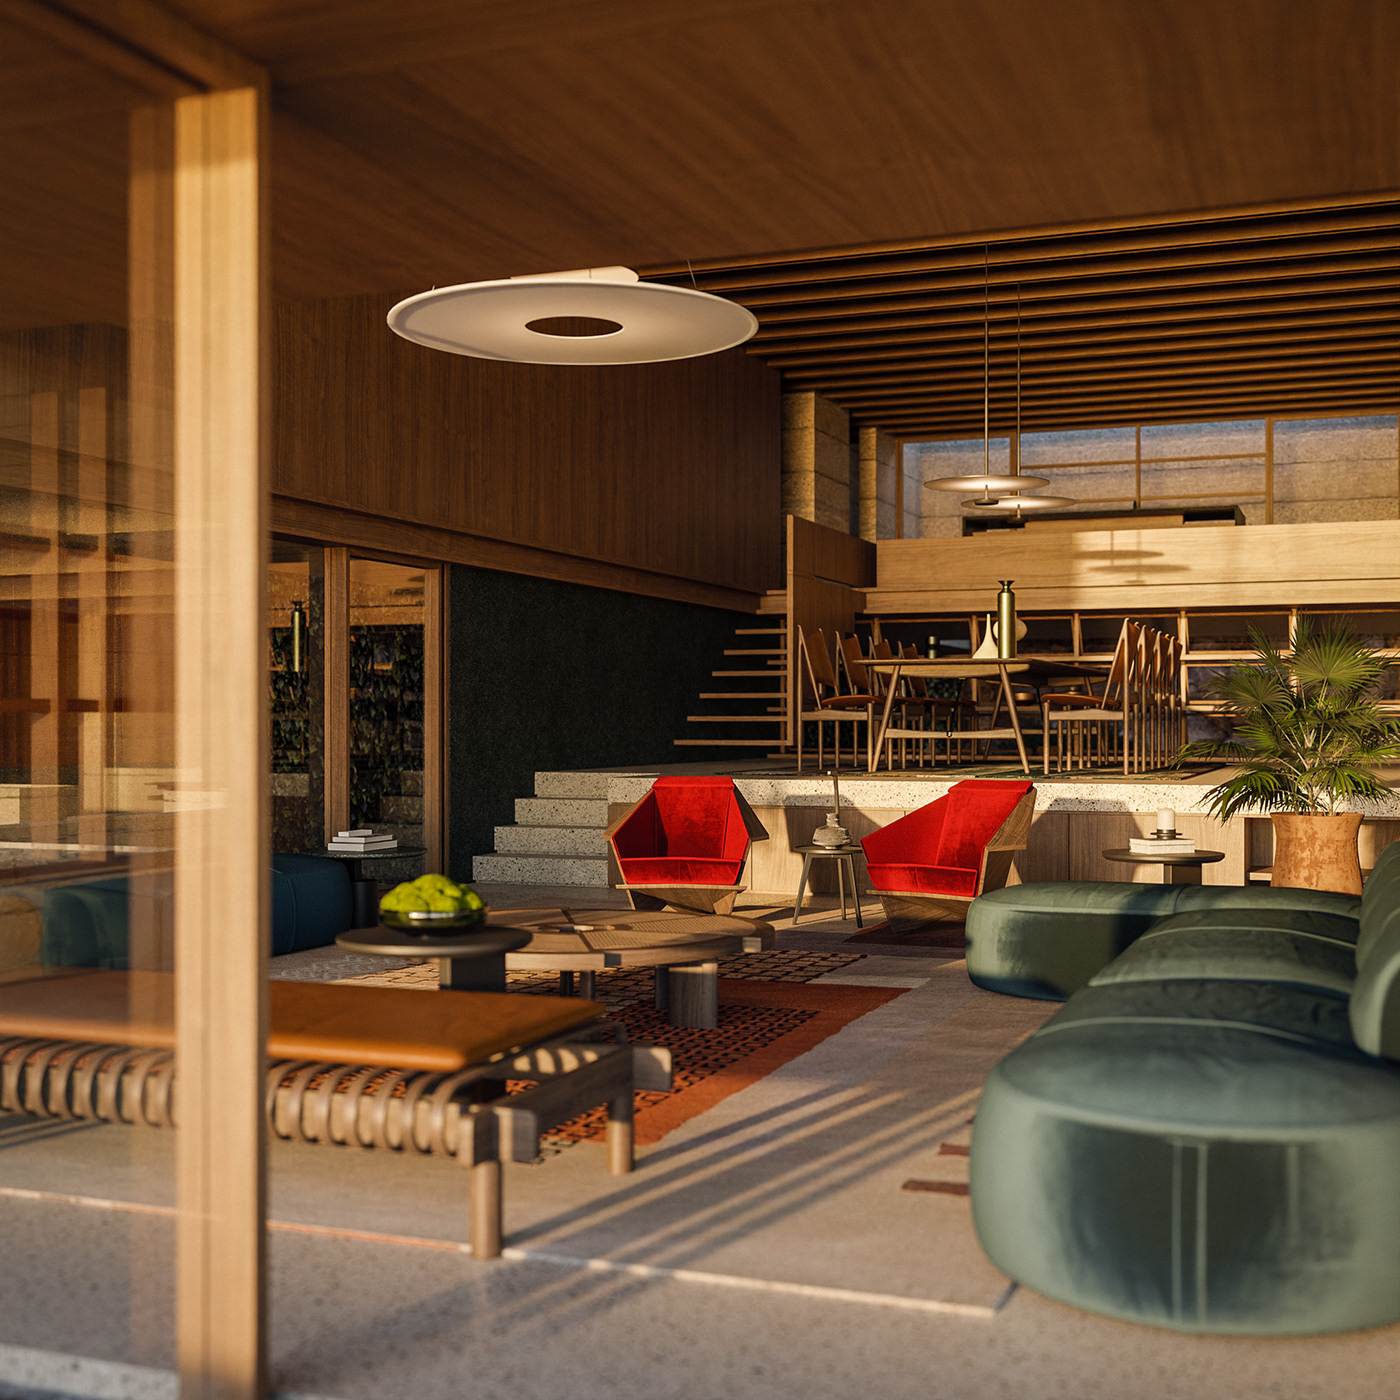 3D architecture archviz CG design house Interior interior design  Render visualization